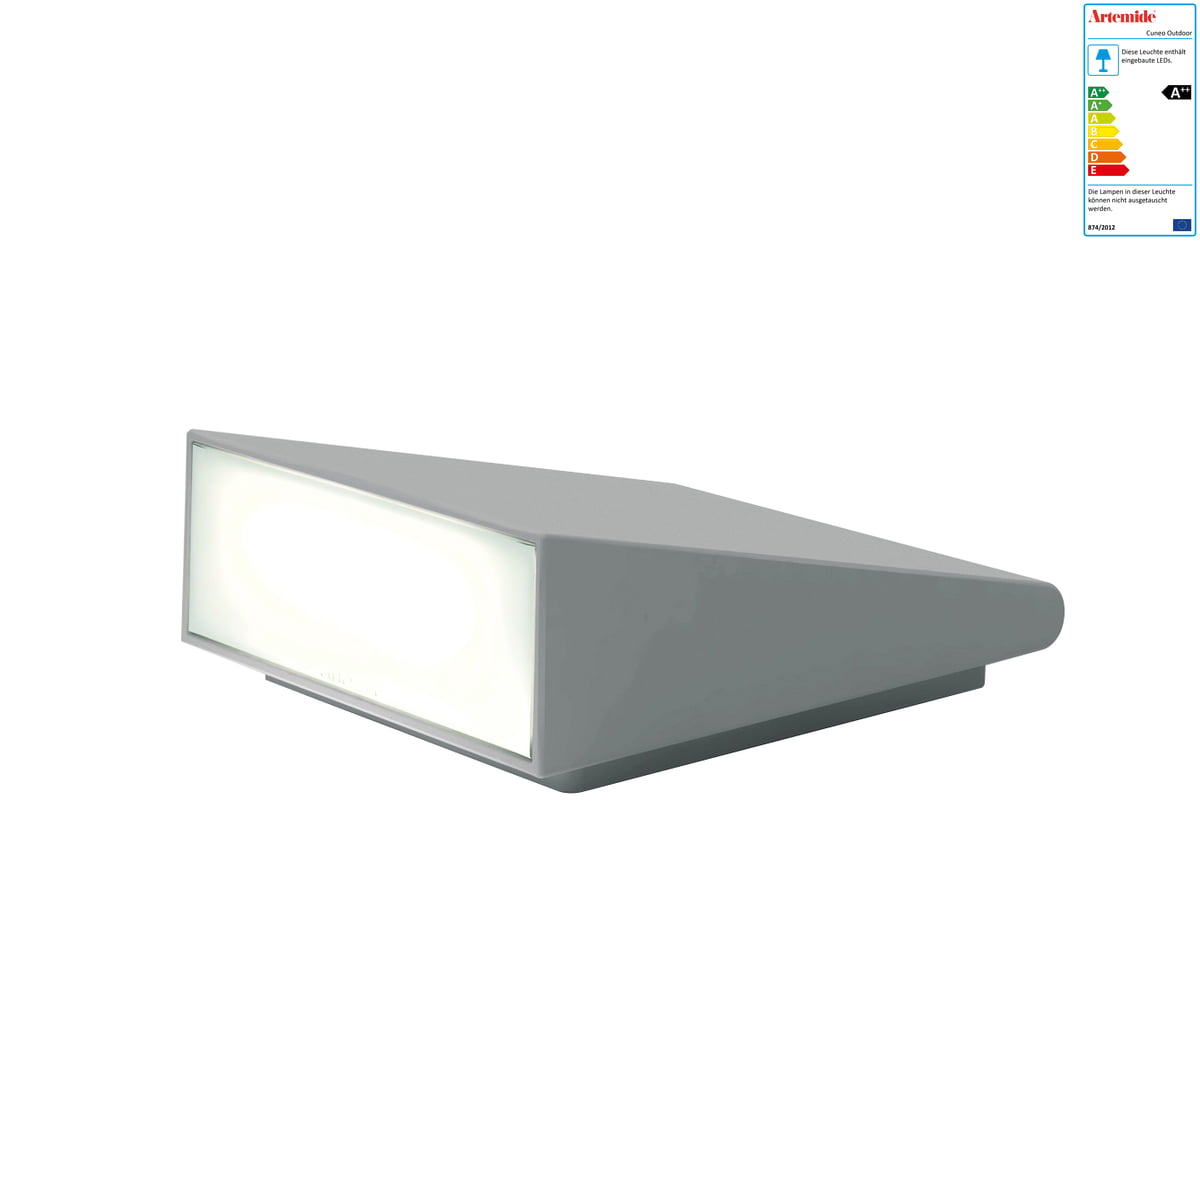 Artemide - Cuneo Outdoor LED-Wandleuchte, grau / weiß